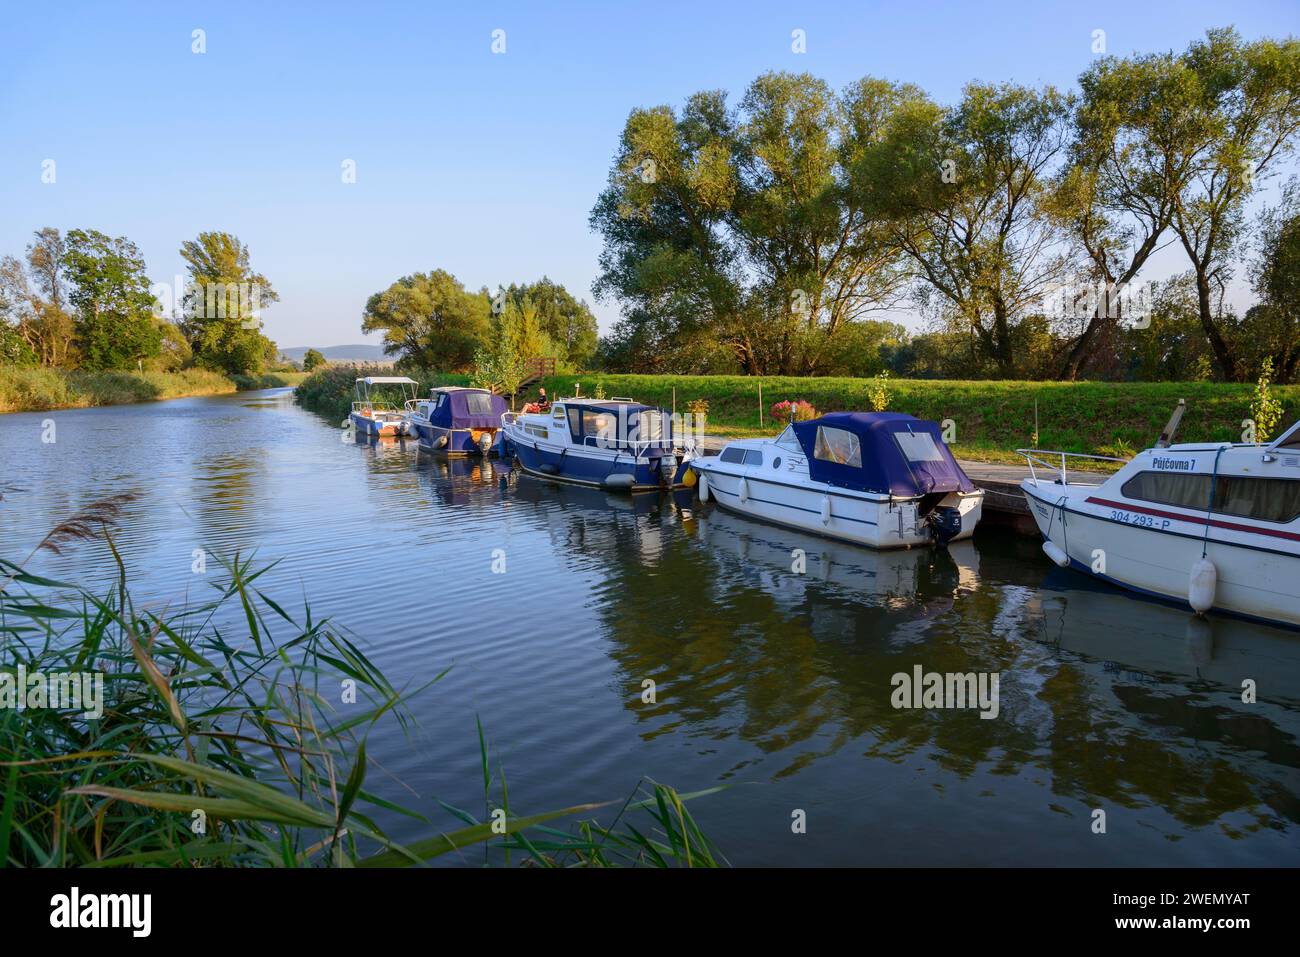 Mehrere Boote liegen entlang eines ruhigen Flusses mit umliegenden Bäumen, Yachthafen, Batuv kanal, Bata Canal, Skalica, Skalica, Trnavsky kraj, Slowakei Stockfoto